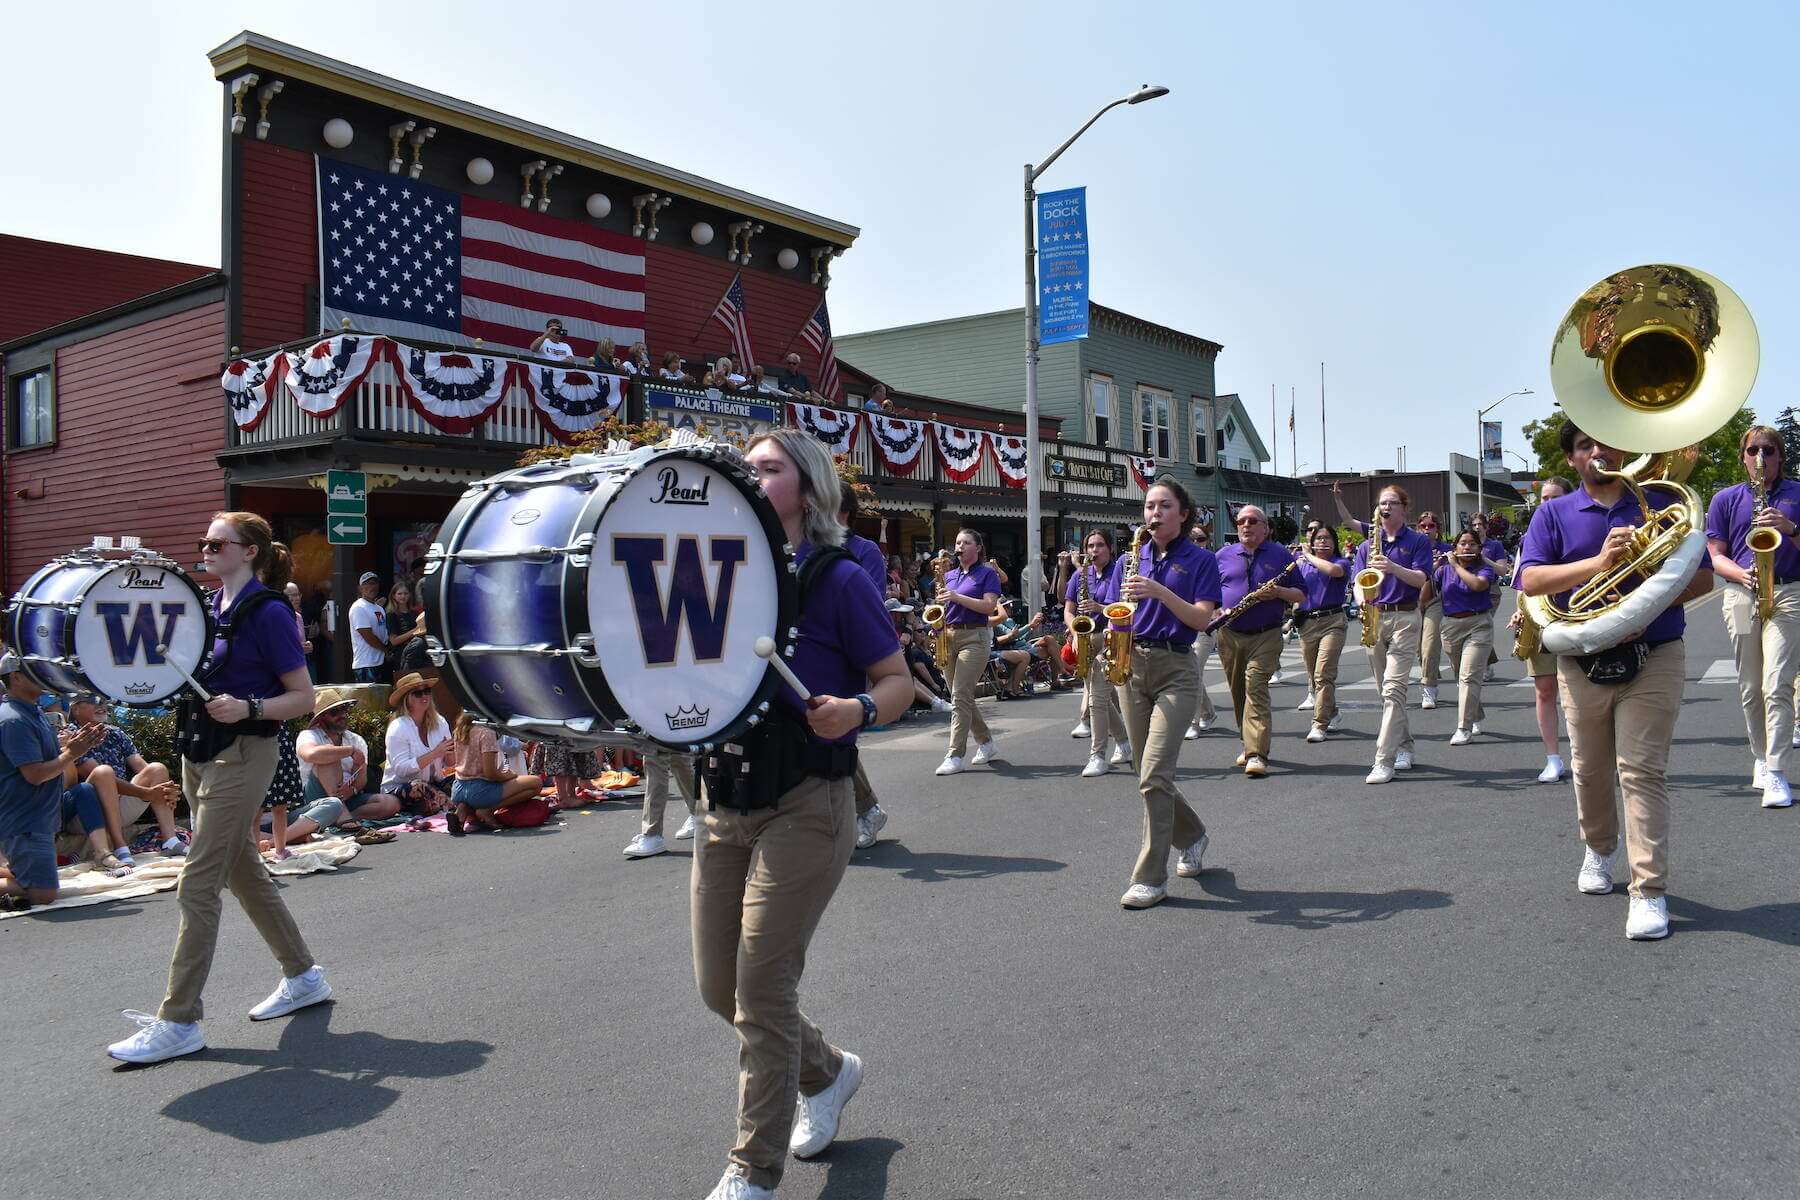 University of Washington Husky Marching Band